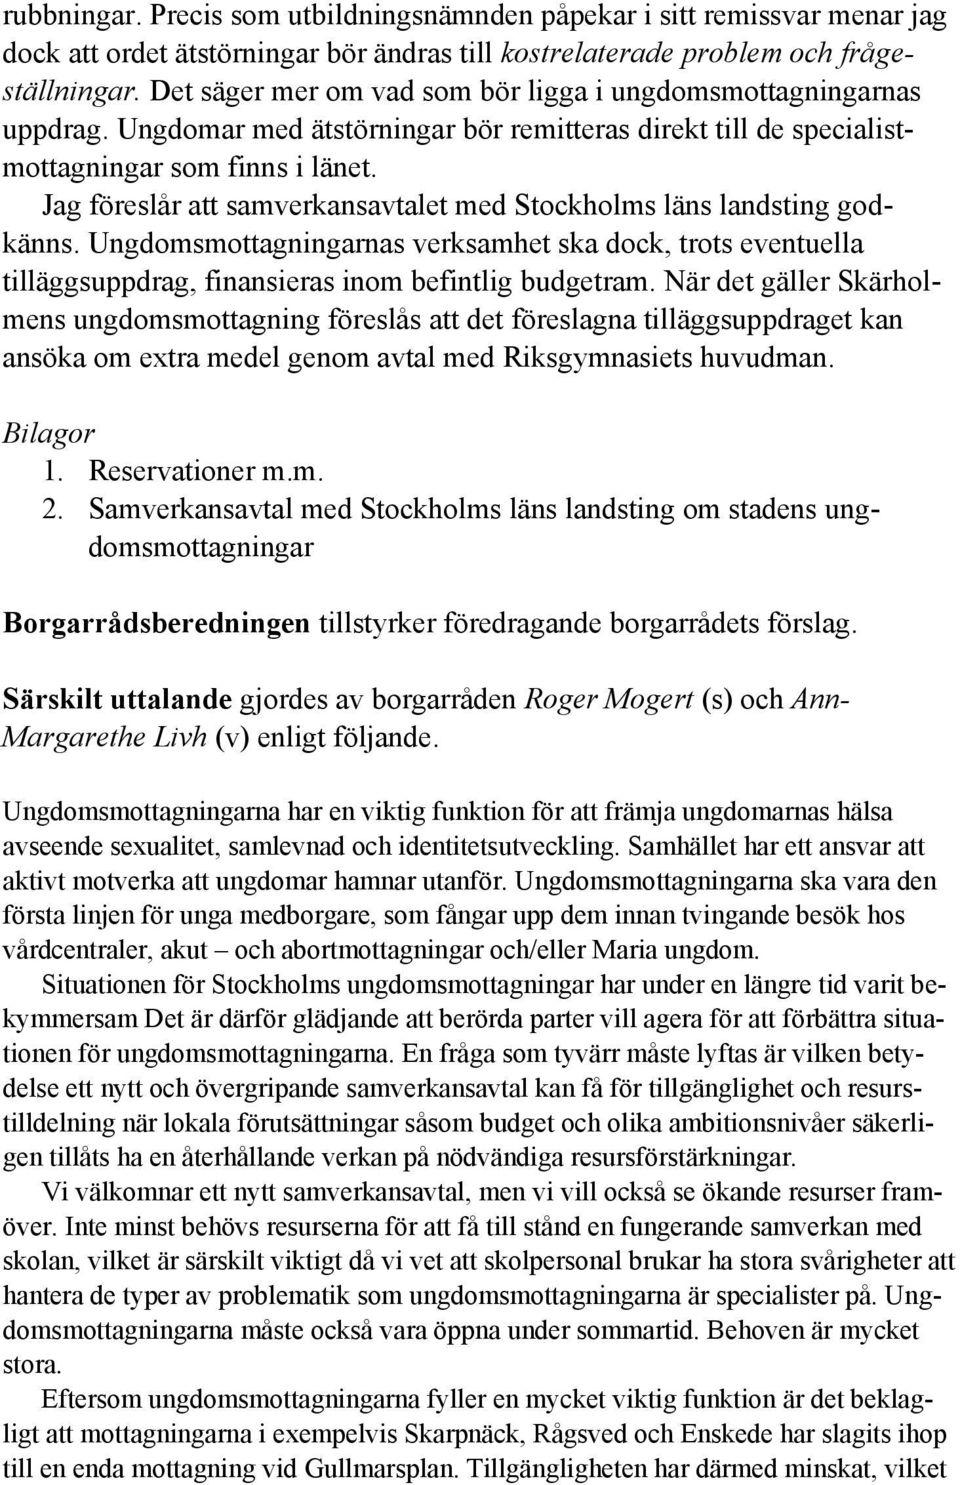 Jag föreslår att samverkansavtalet med Stockholms läns landsting godkänns. Ungdomsmottagningarnas verksamhet ska dock, trots eventuella tilläggsuppdrag, finansieras inom befintlig budgetram.